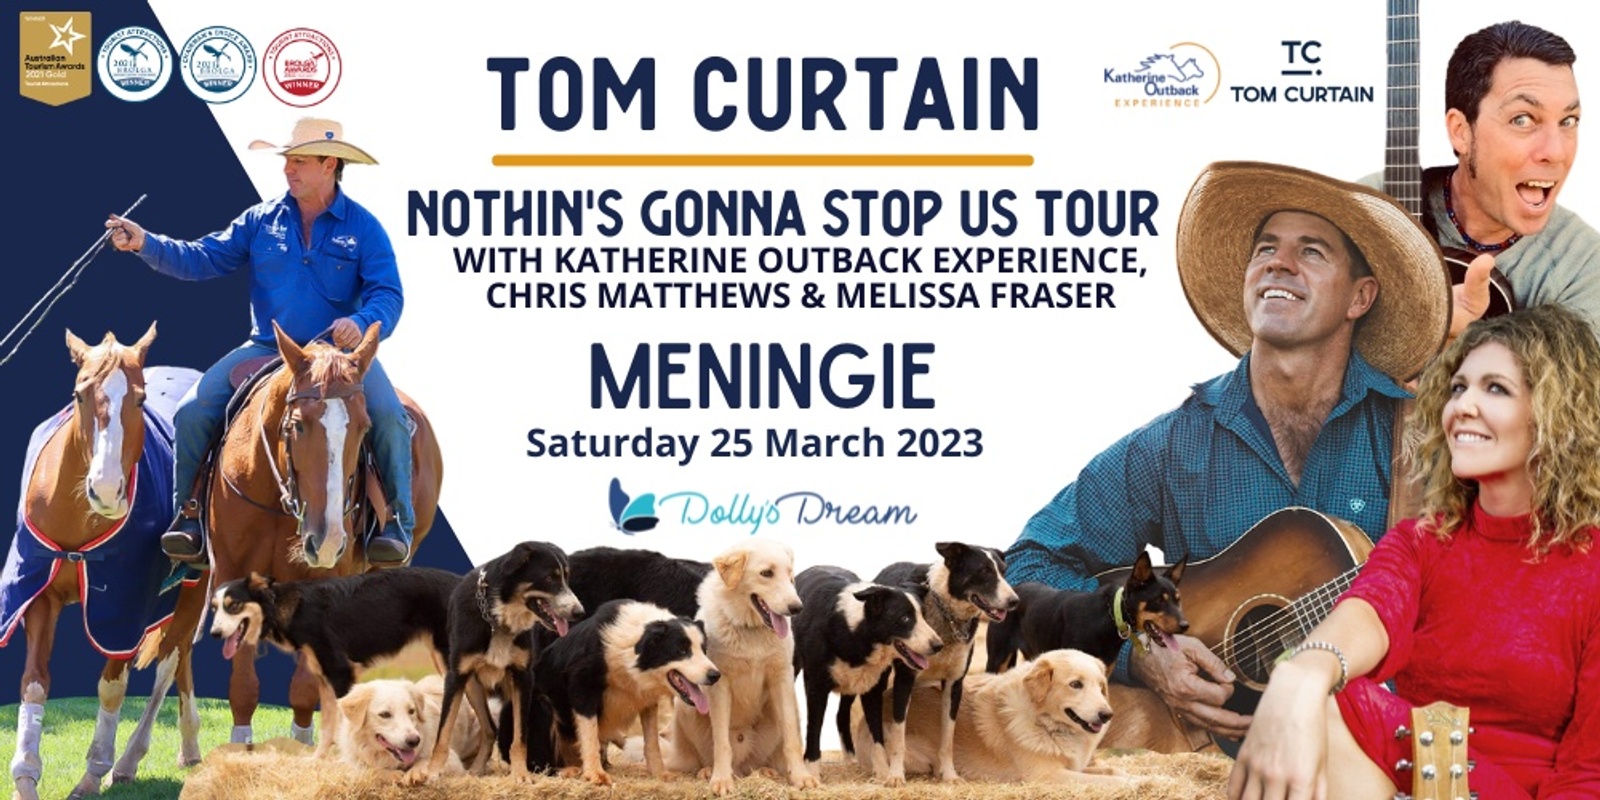 Tom Curtain Tour - MENINGIE, SA